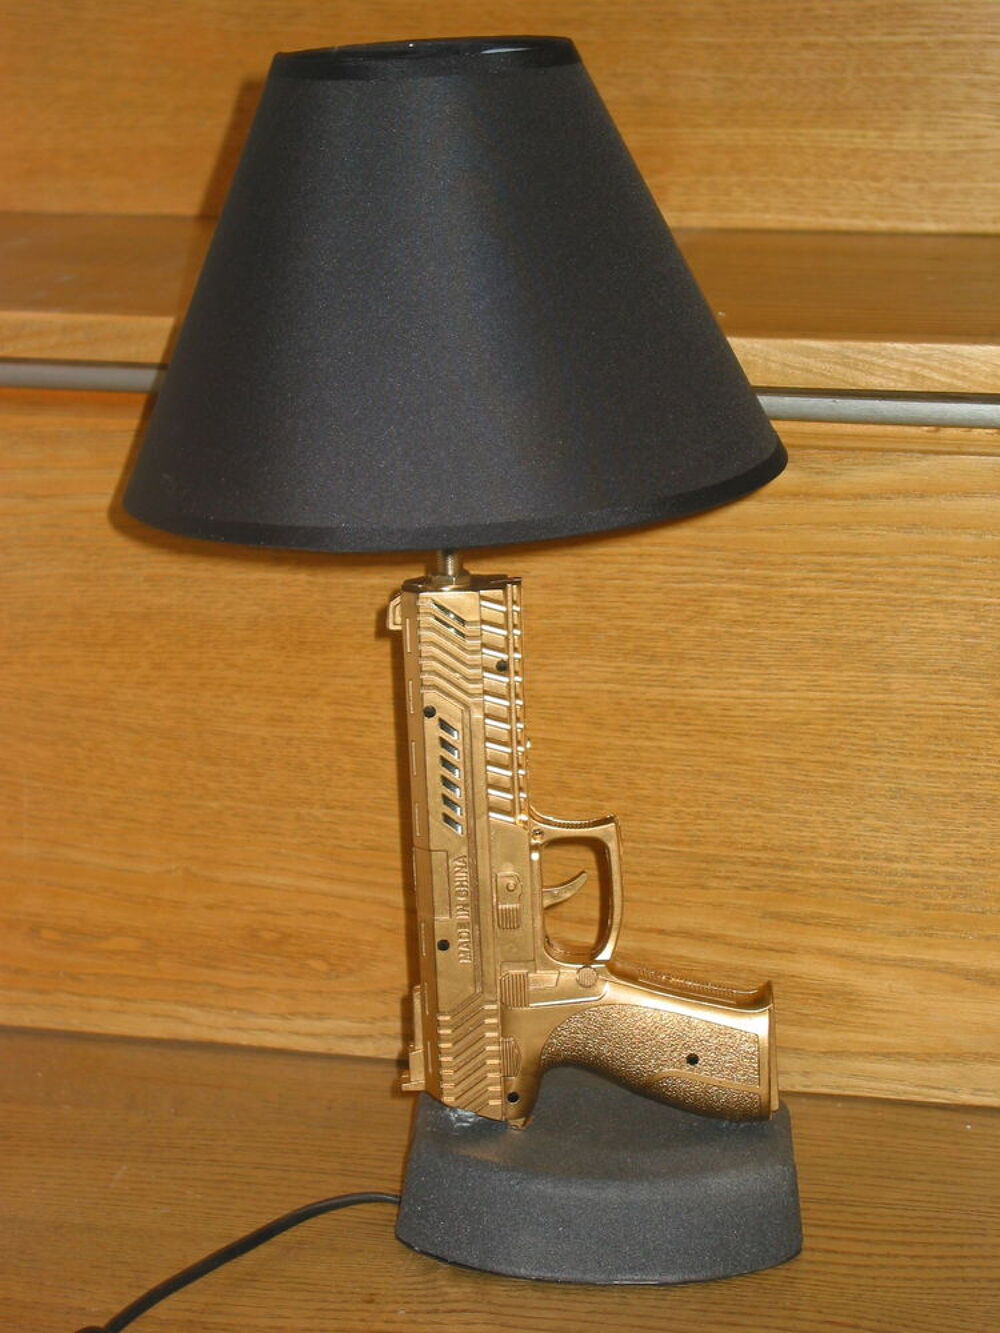 LAMPE GUN DESIGN COLT SIG SAUER abat jour chevet bureau tabl Electromnager